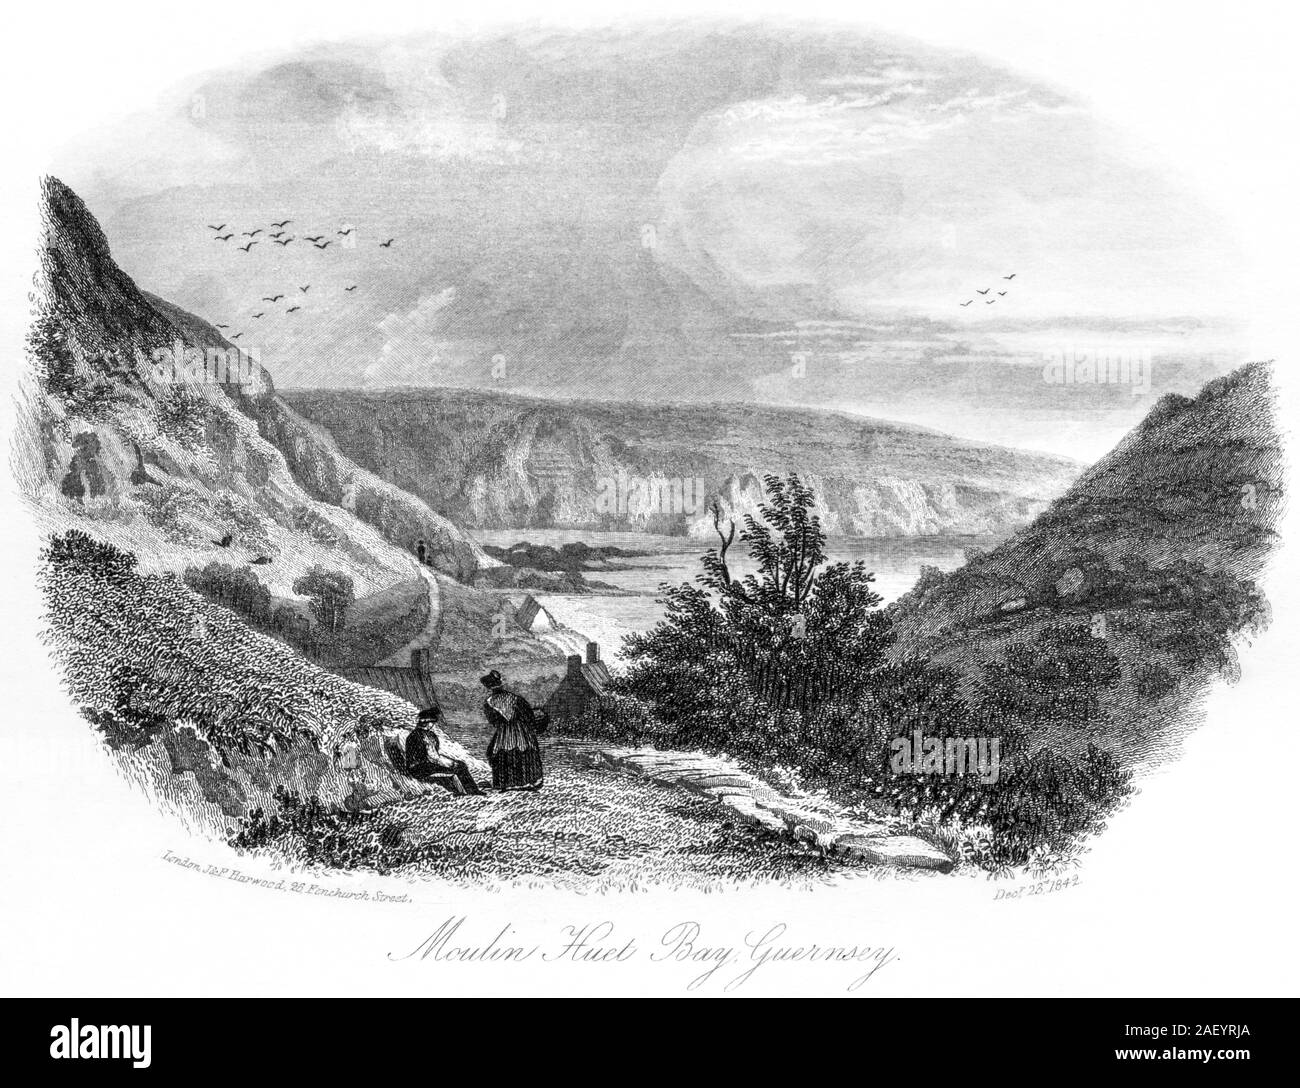 Una incisione di Moulin Huet Bay, Guernsey datata 23 dicembre 1842 scansionati ad alta risoluzione. Ritiene copyright free. Foto Stock